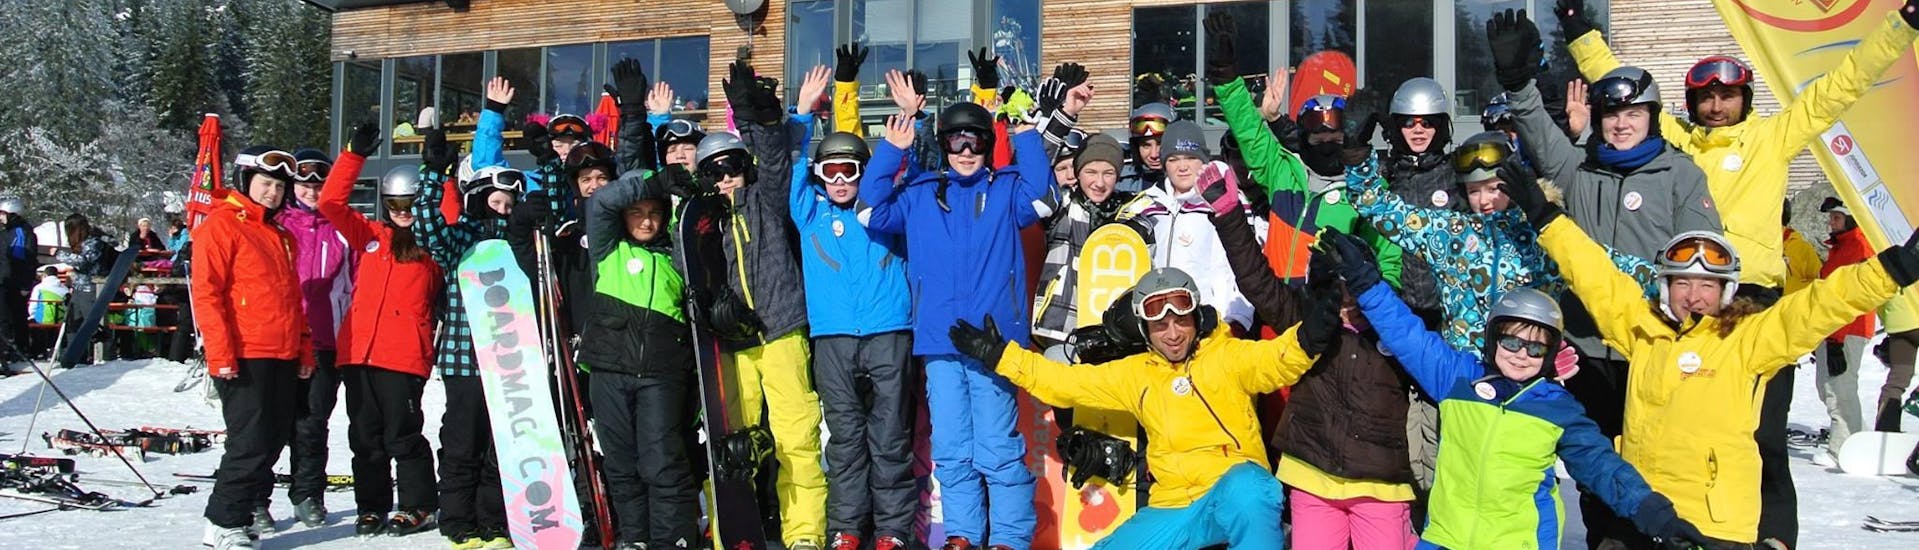 Un gruppo di snowboarder si diverte dopo le lezioni di snowboard con la Schneesportschule ON SNOW Feldberg.